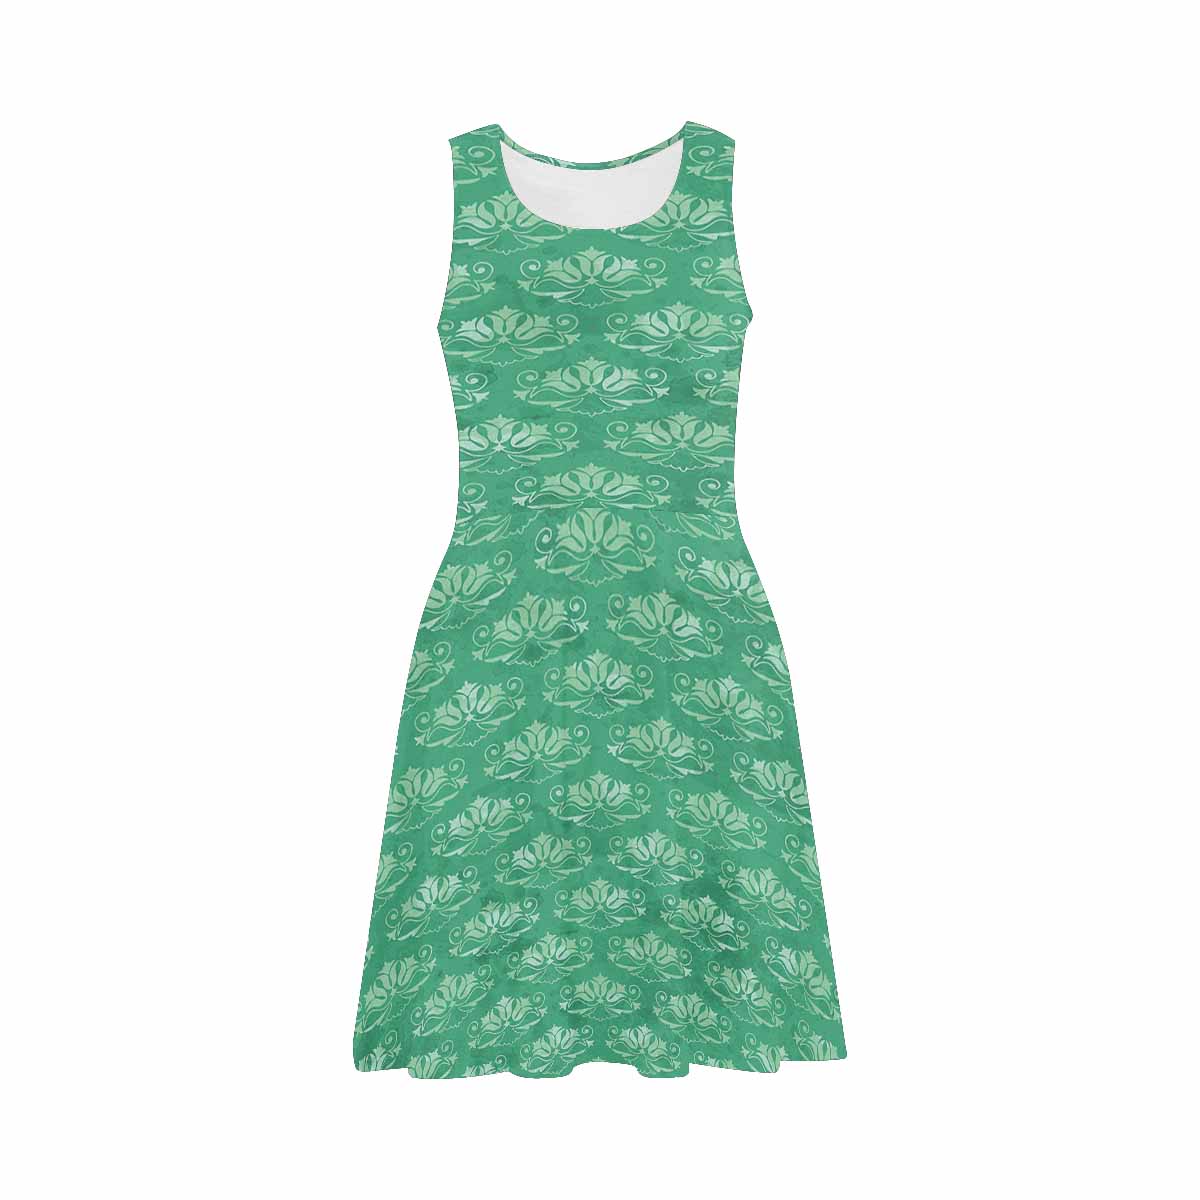 Antique General summer dress, MODEL 09534, design 57